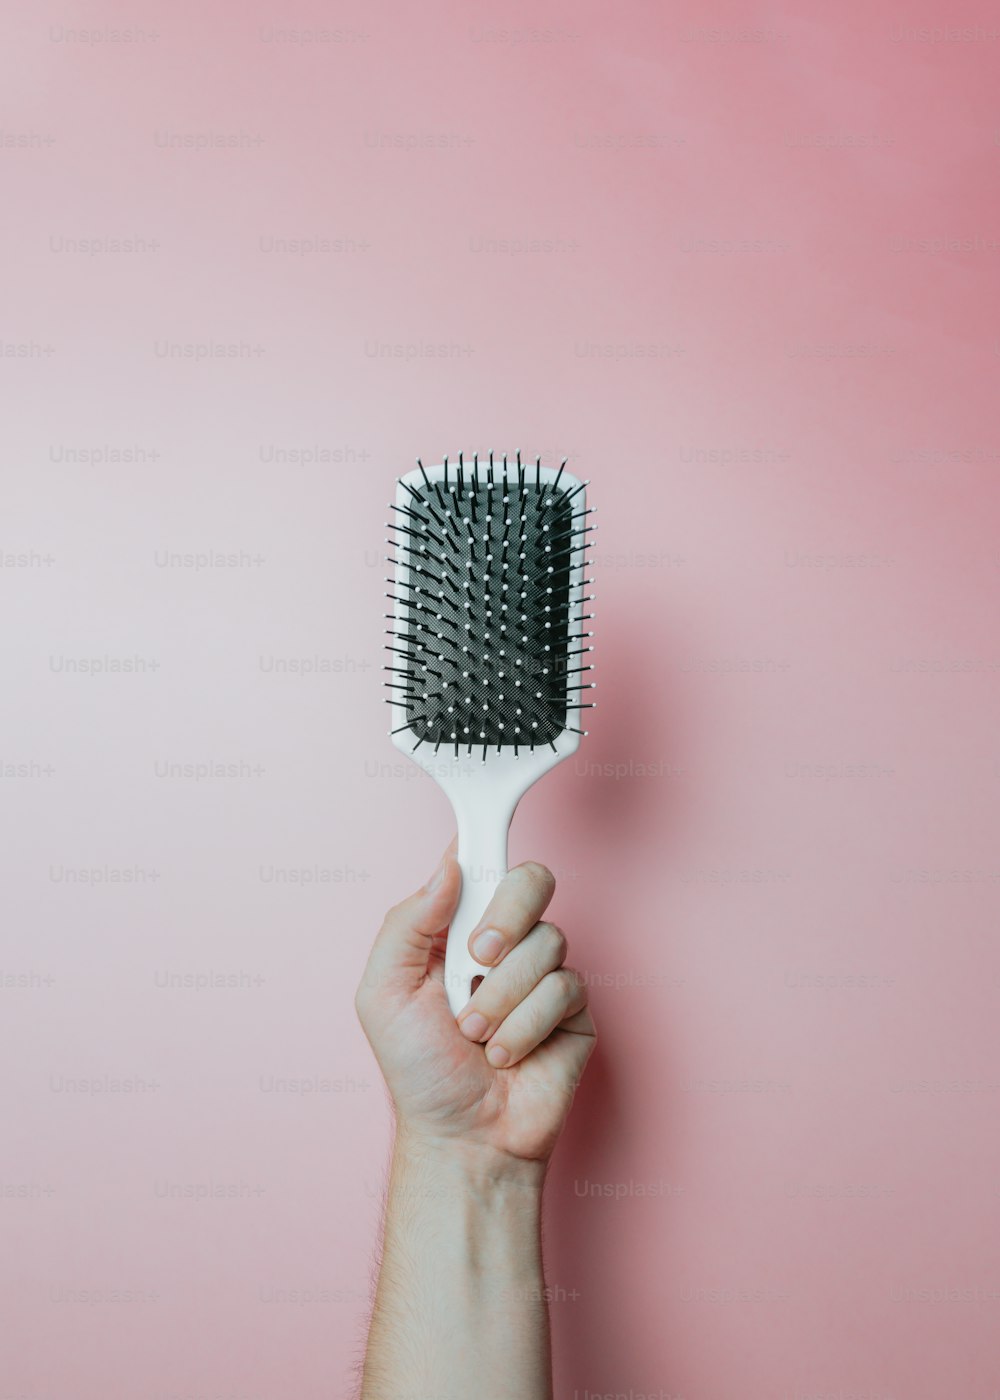 La mano de una mujer sosteniendo un cepillo para el cabello sobre un fondo rosa